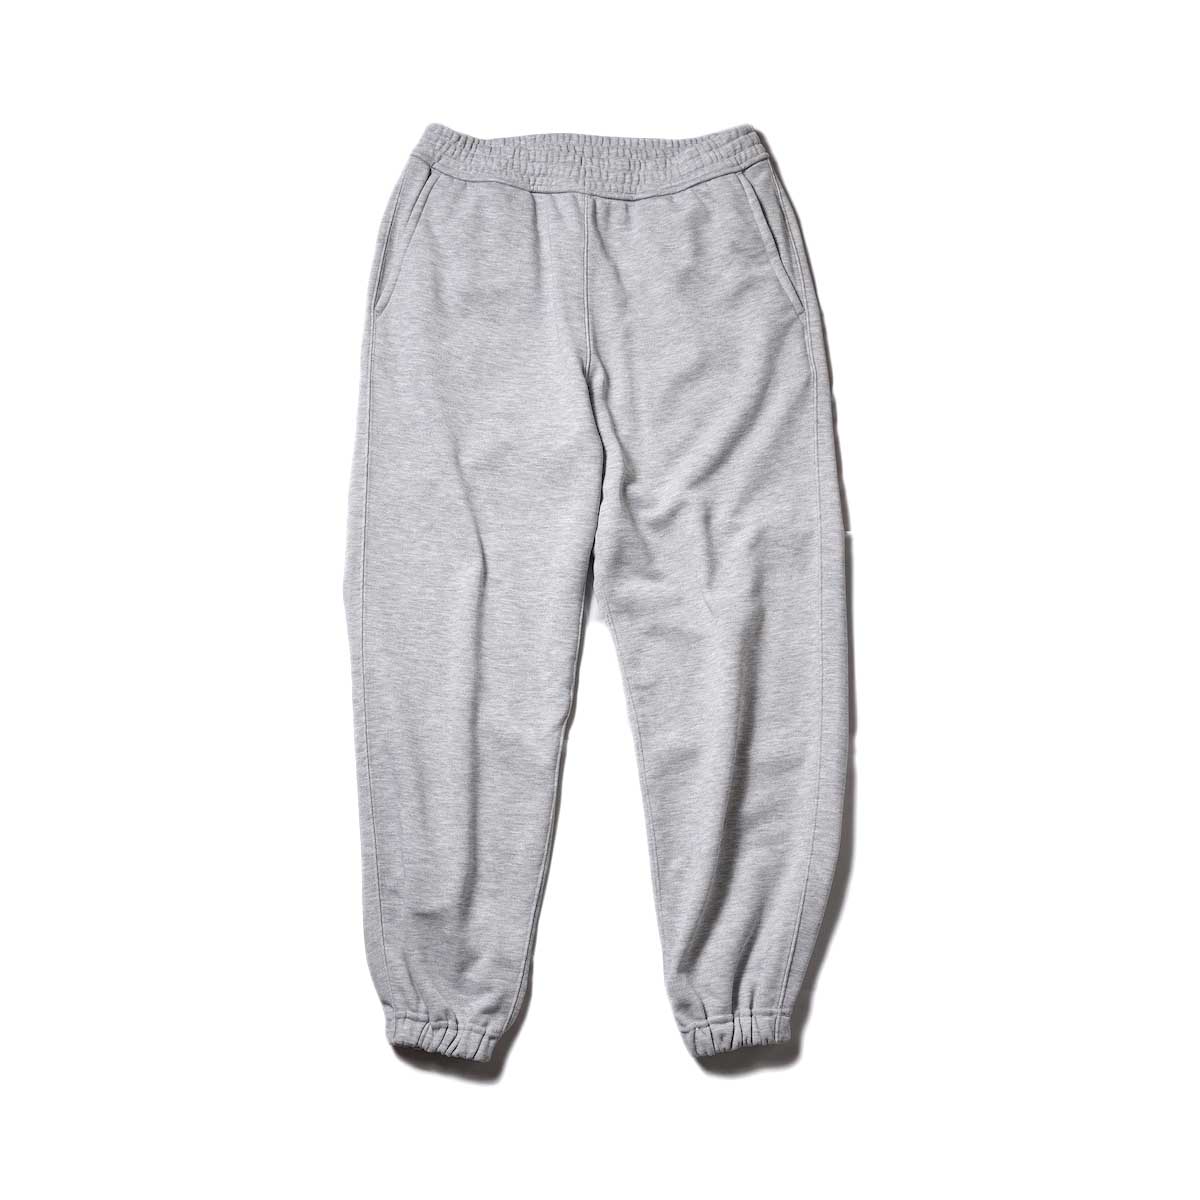 DAIWA PIER39 / Tech Sweat Pants (Gray)